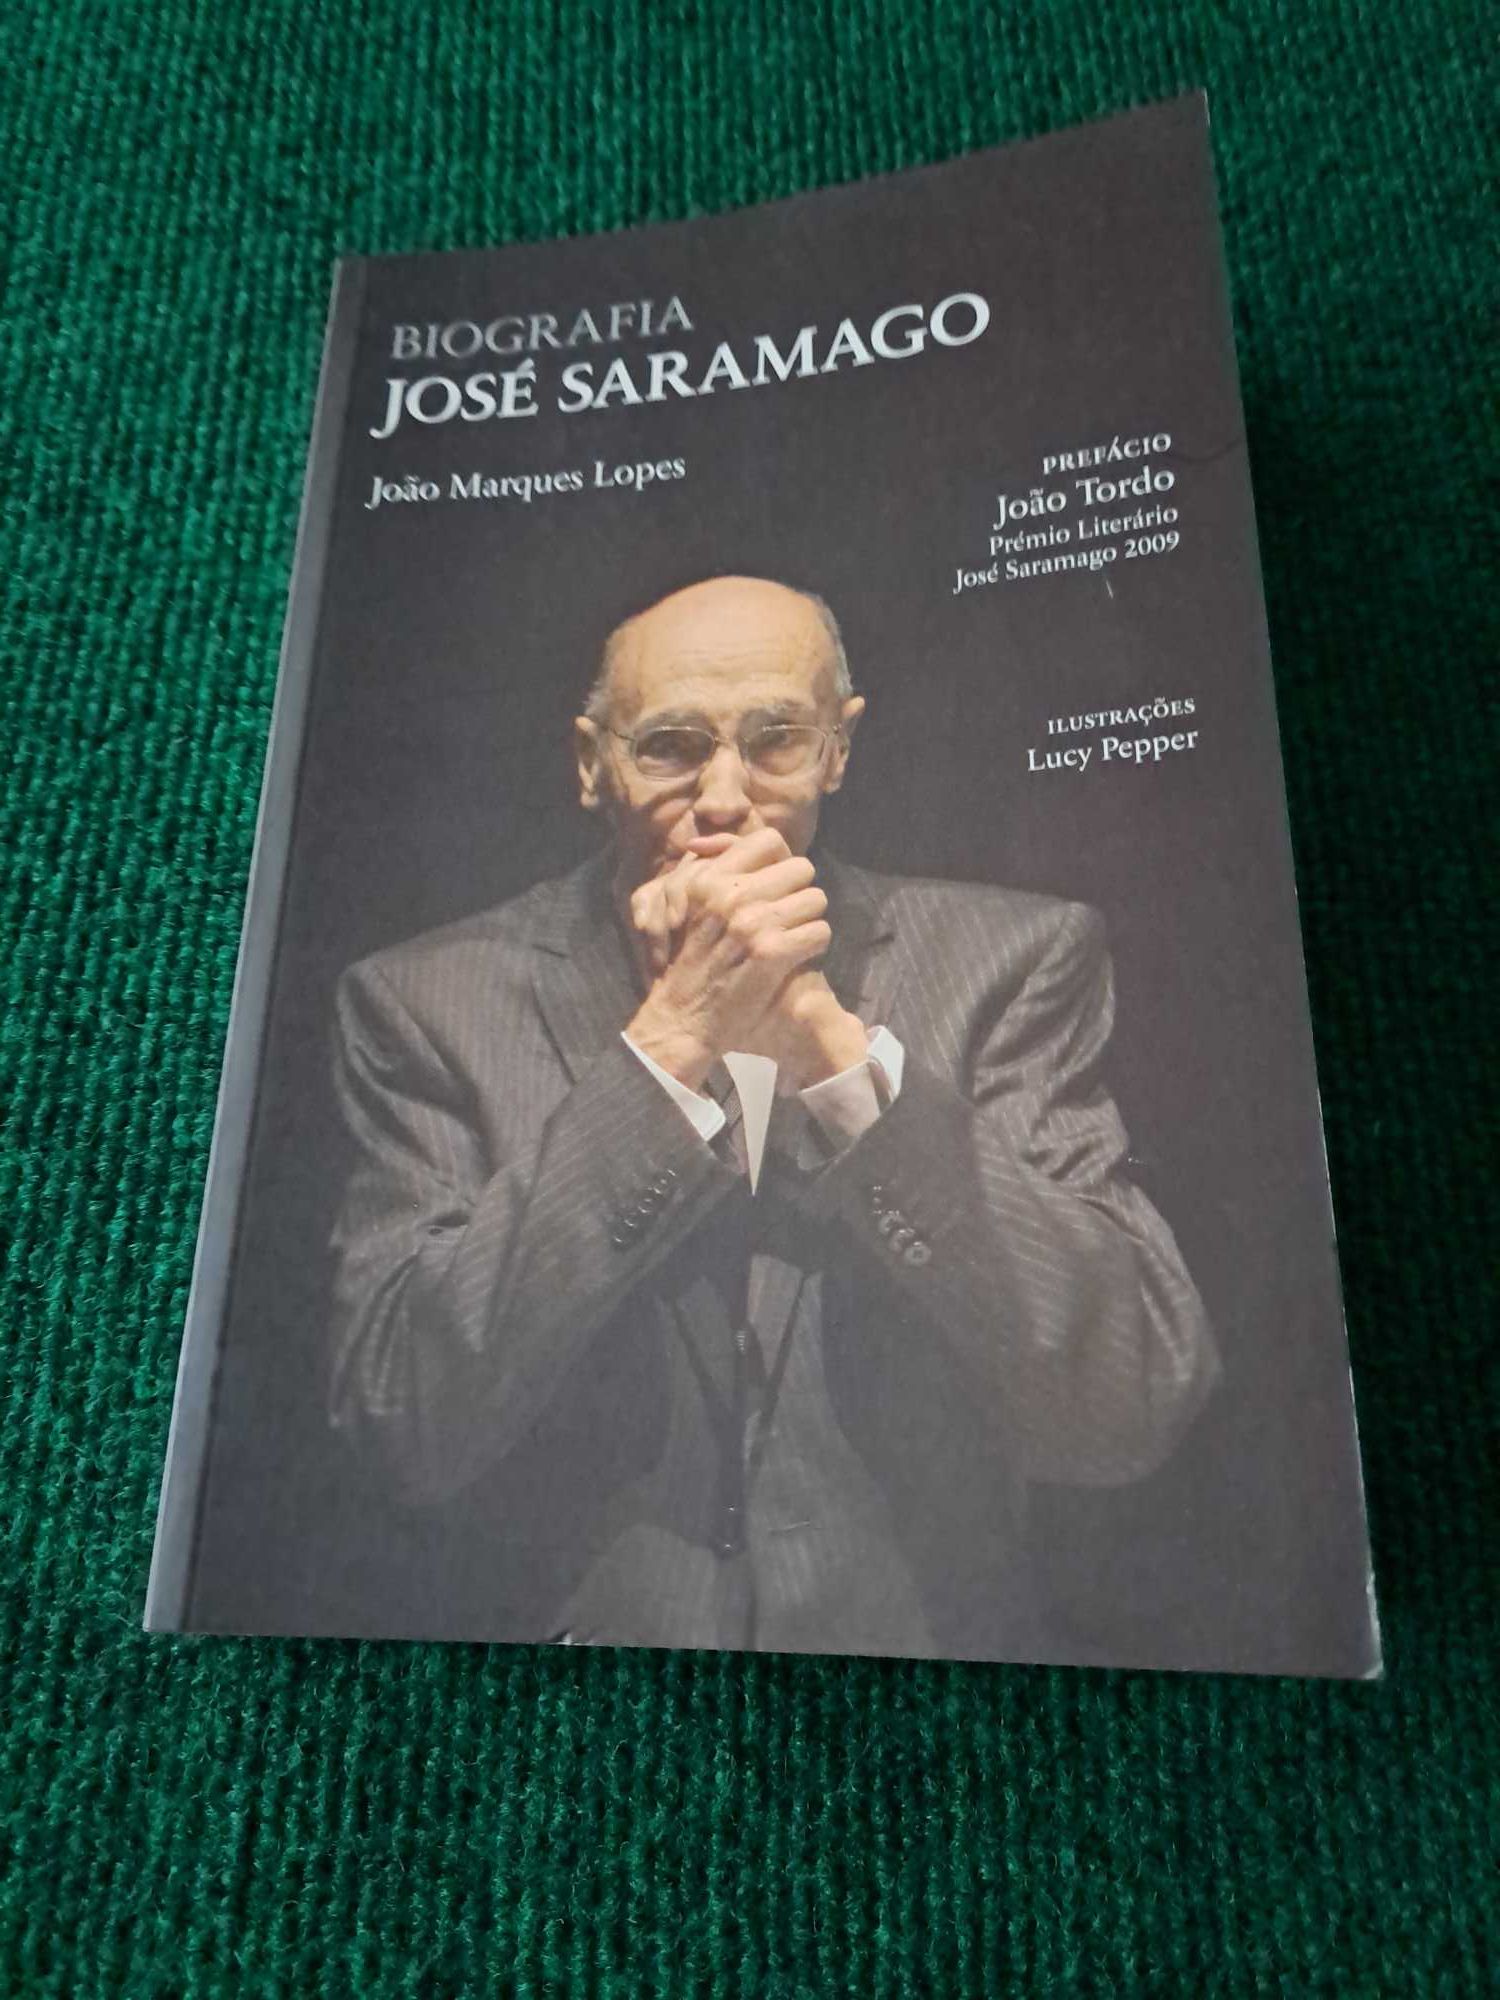 Biografia José Saramago - João Marques Lopes